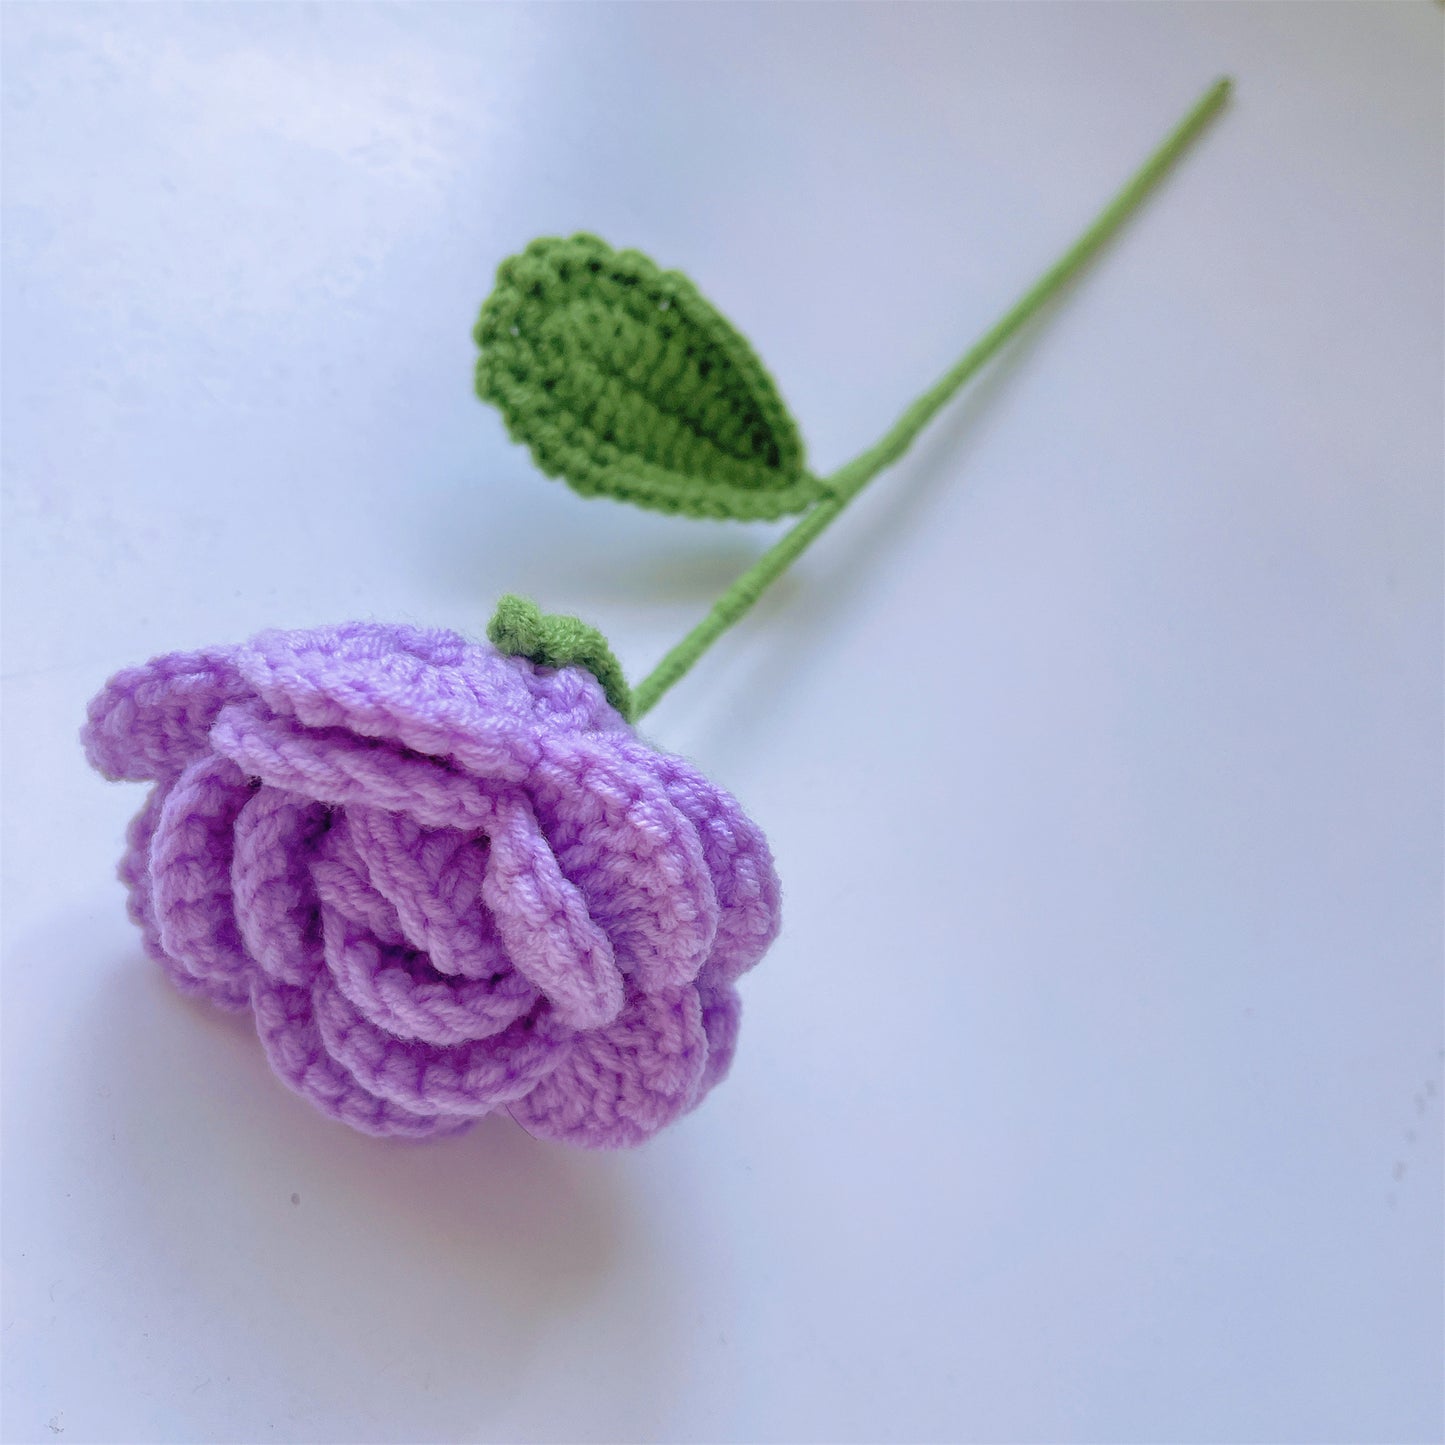 Bouquet de fleurs violettes au crochet fait à la main avec lys, roses, lavande et plus